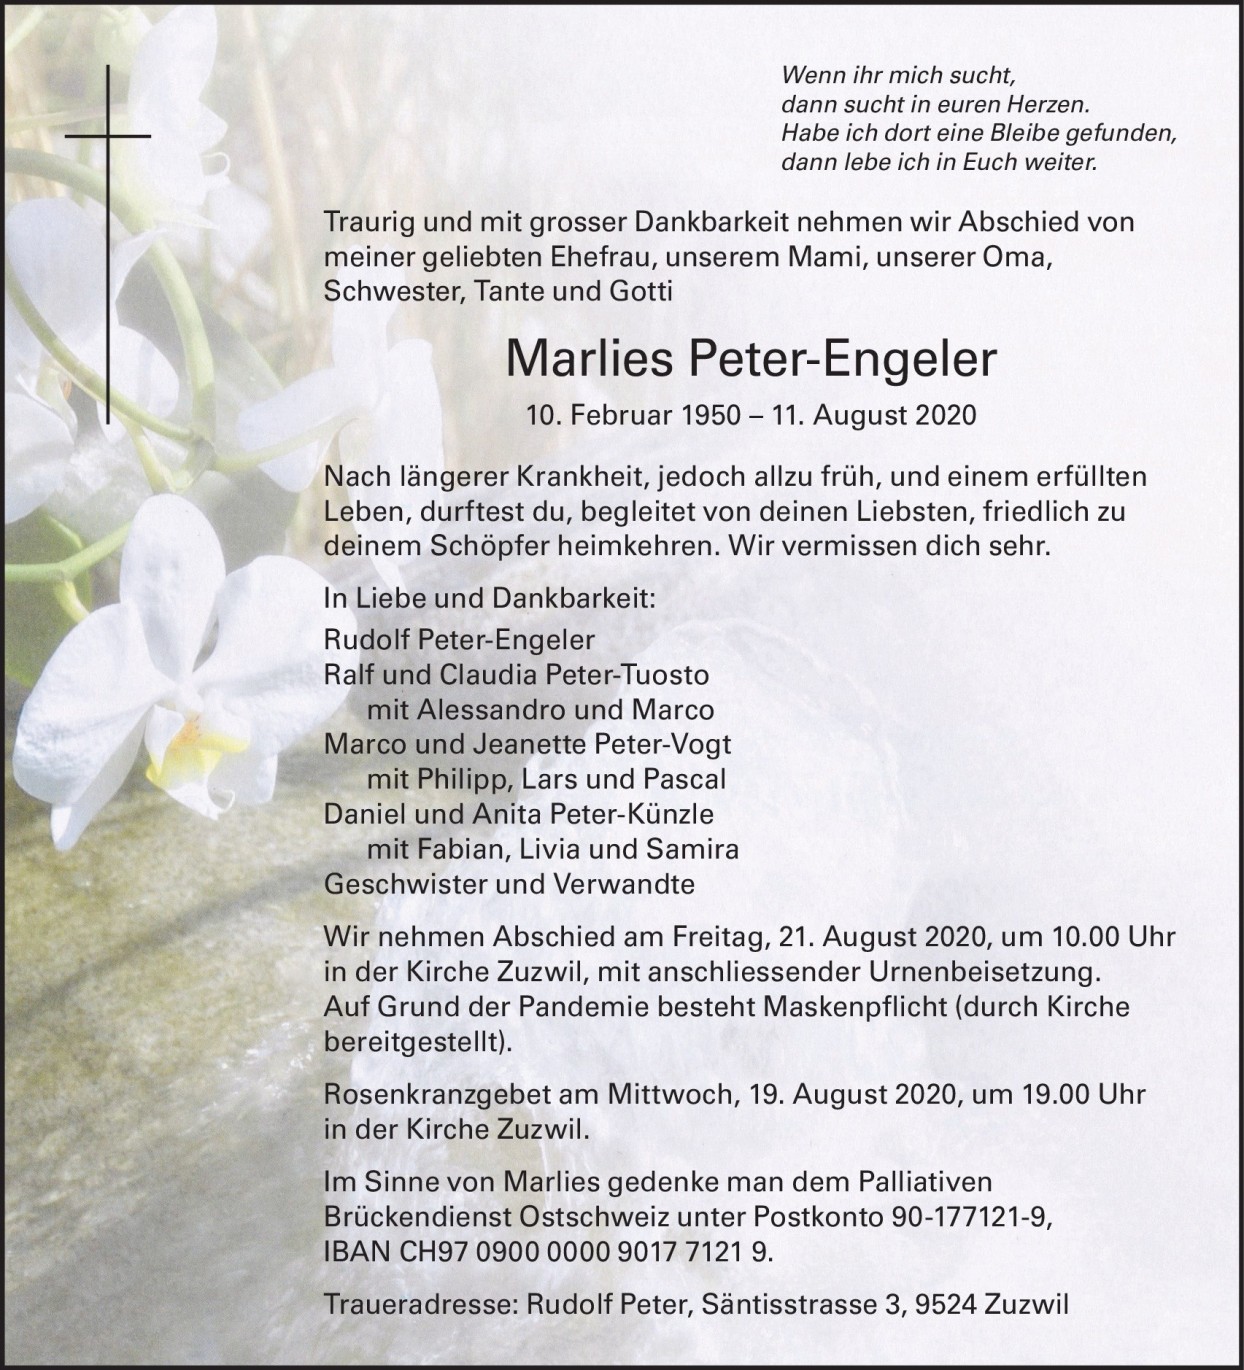 Marlies Peter-Engeler